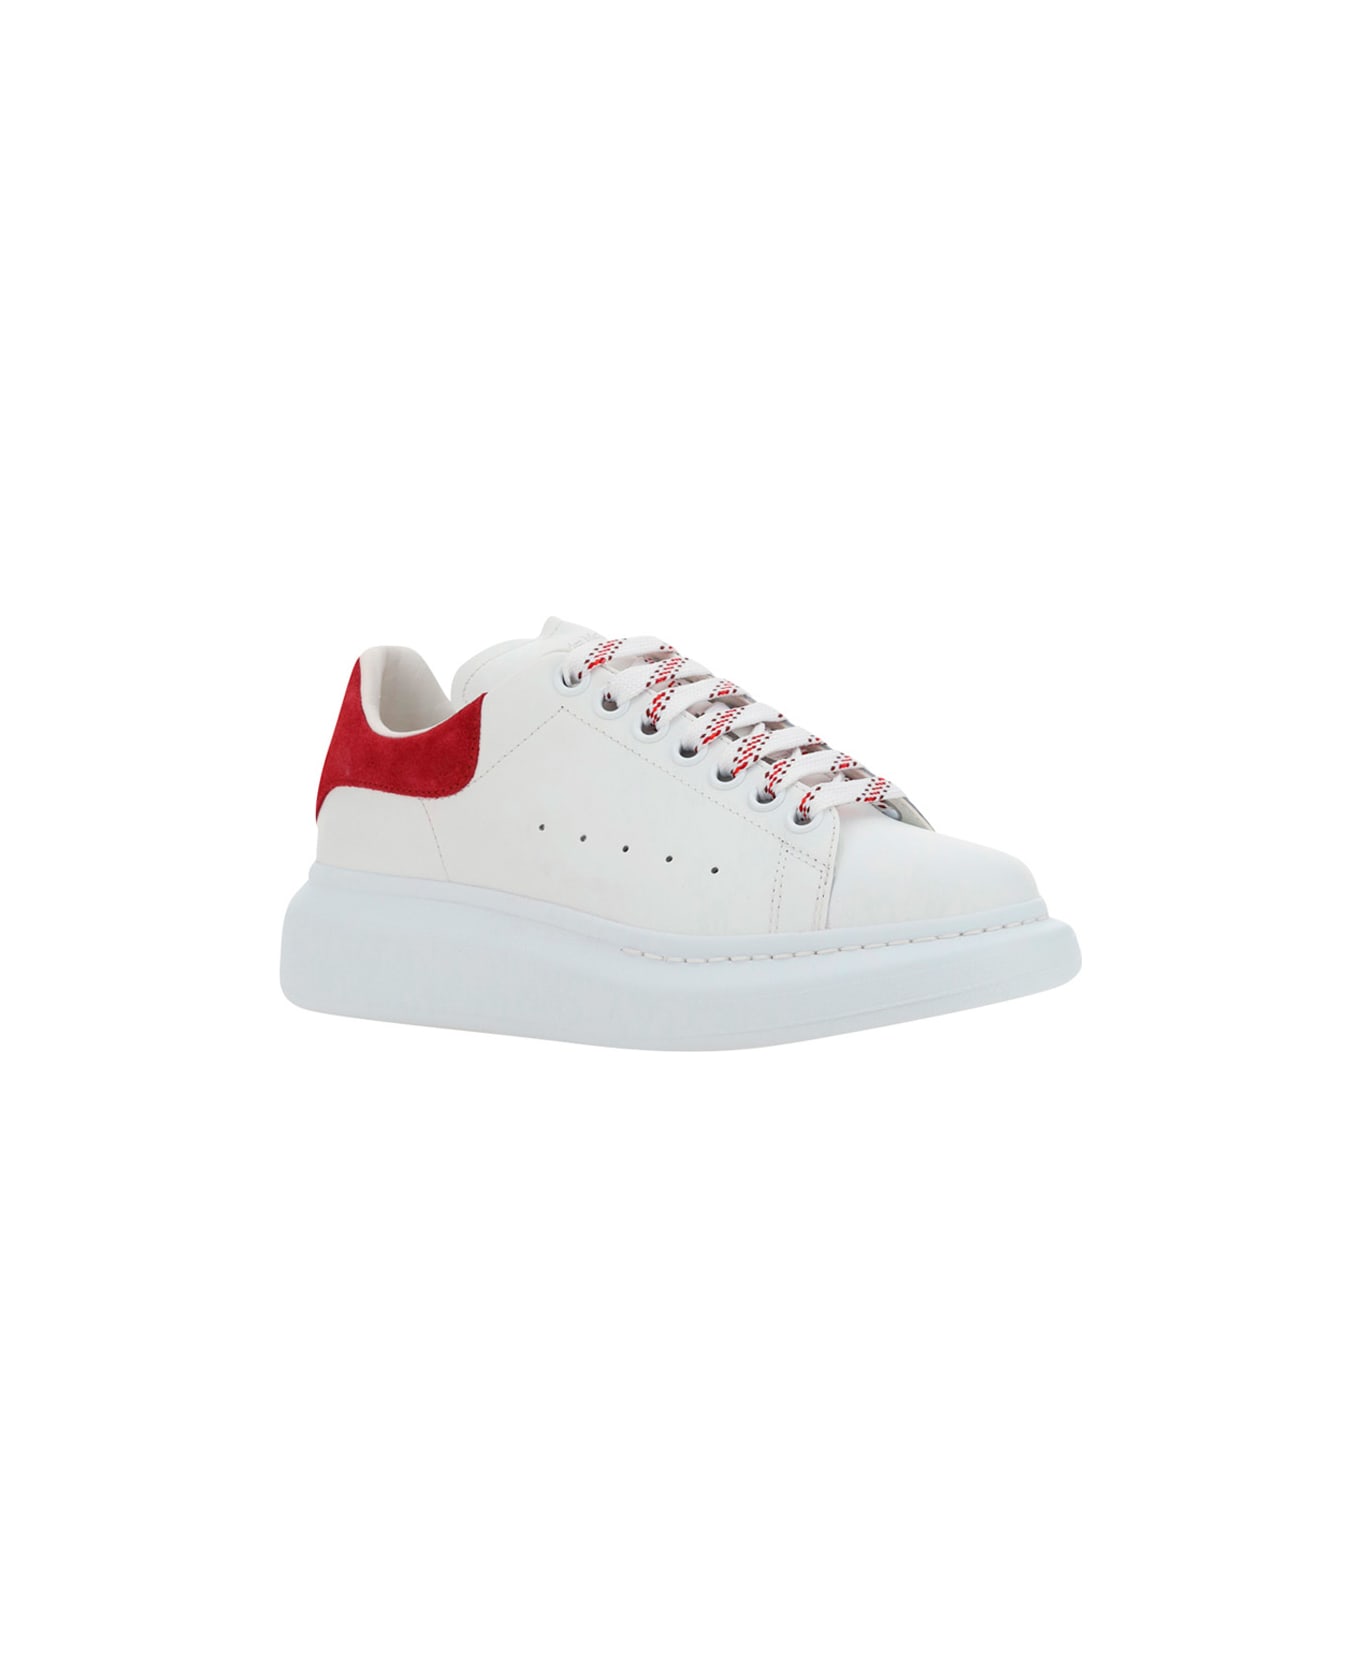 Alexander McQueen Oversized Sneakers In Calfskin - White/cherry